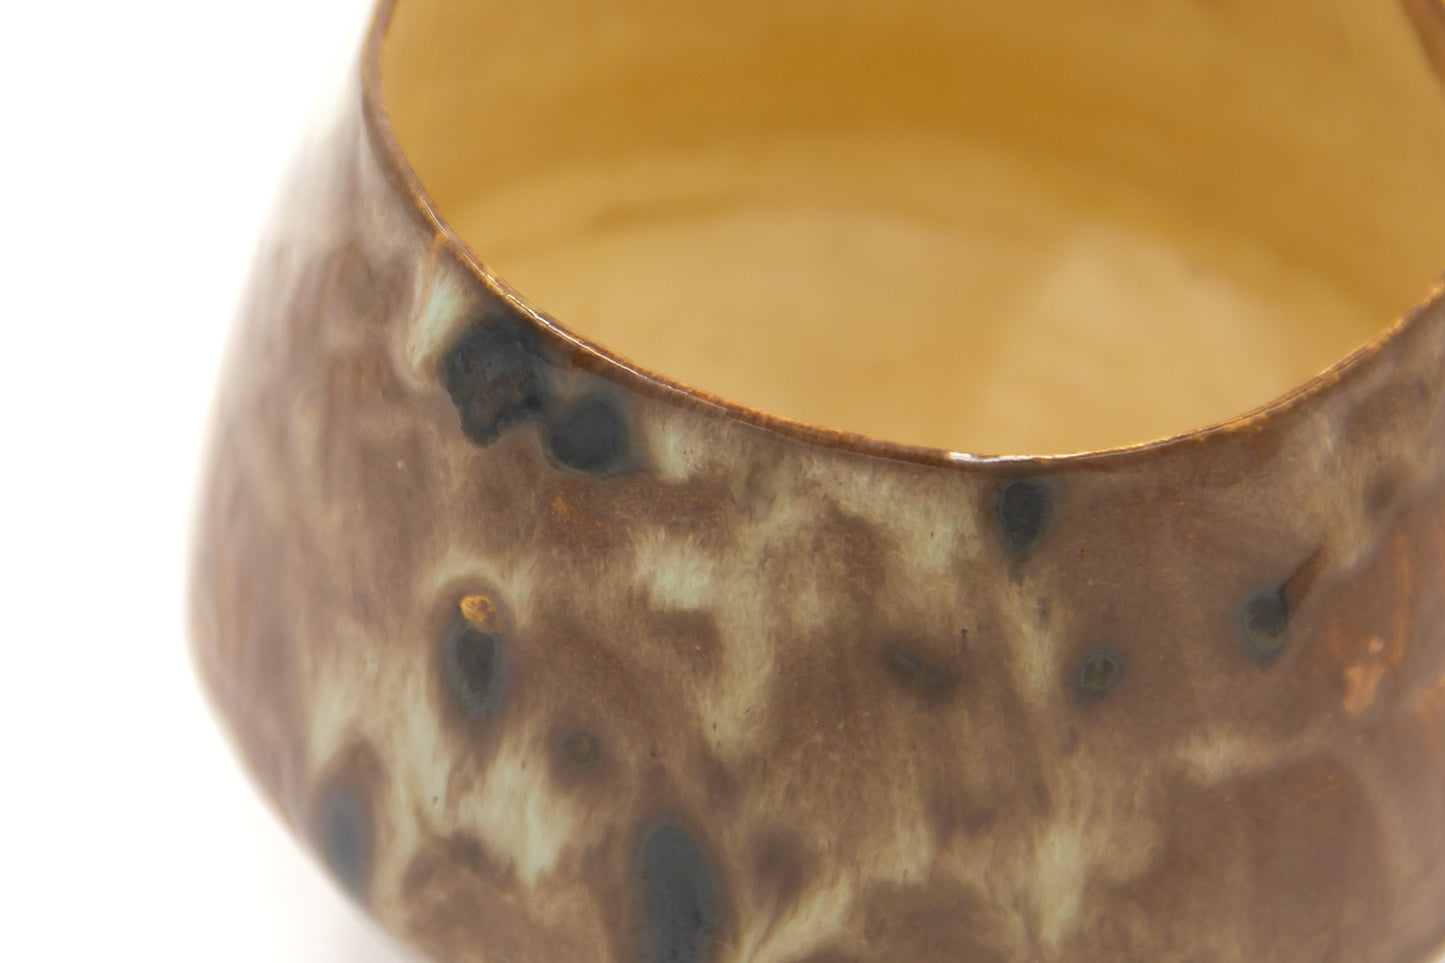 Kubek ceramiczny w kolorze brązowym oraz plamkami